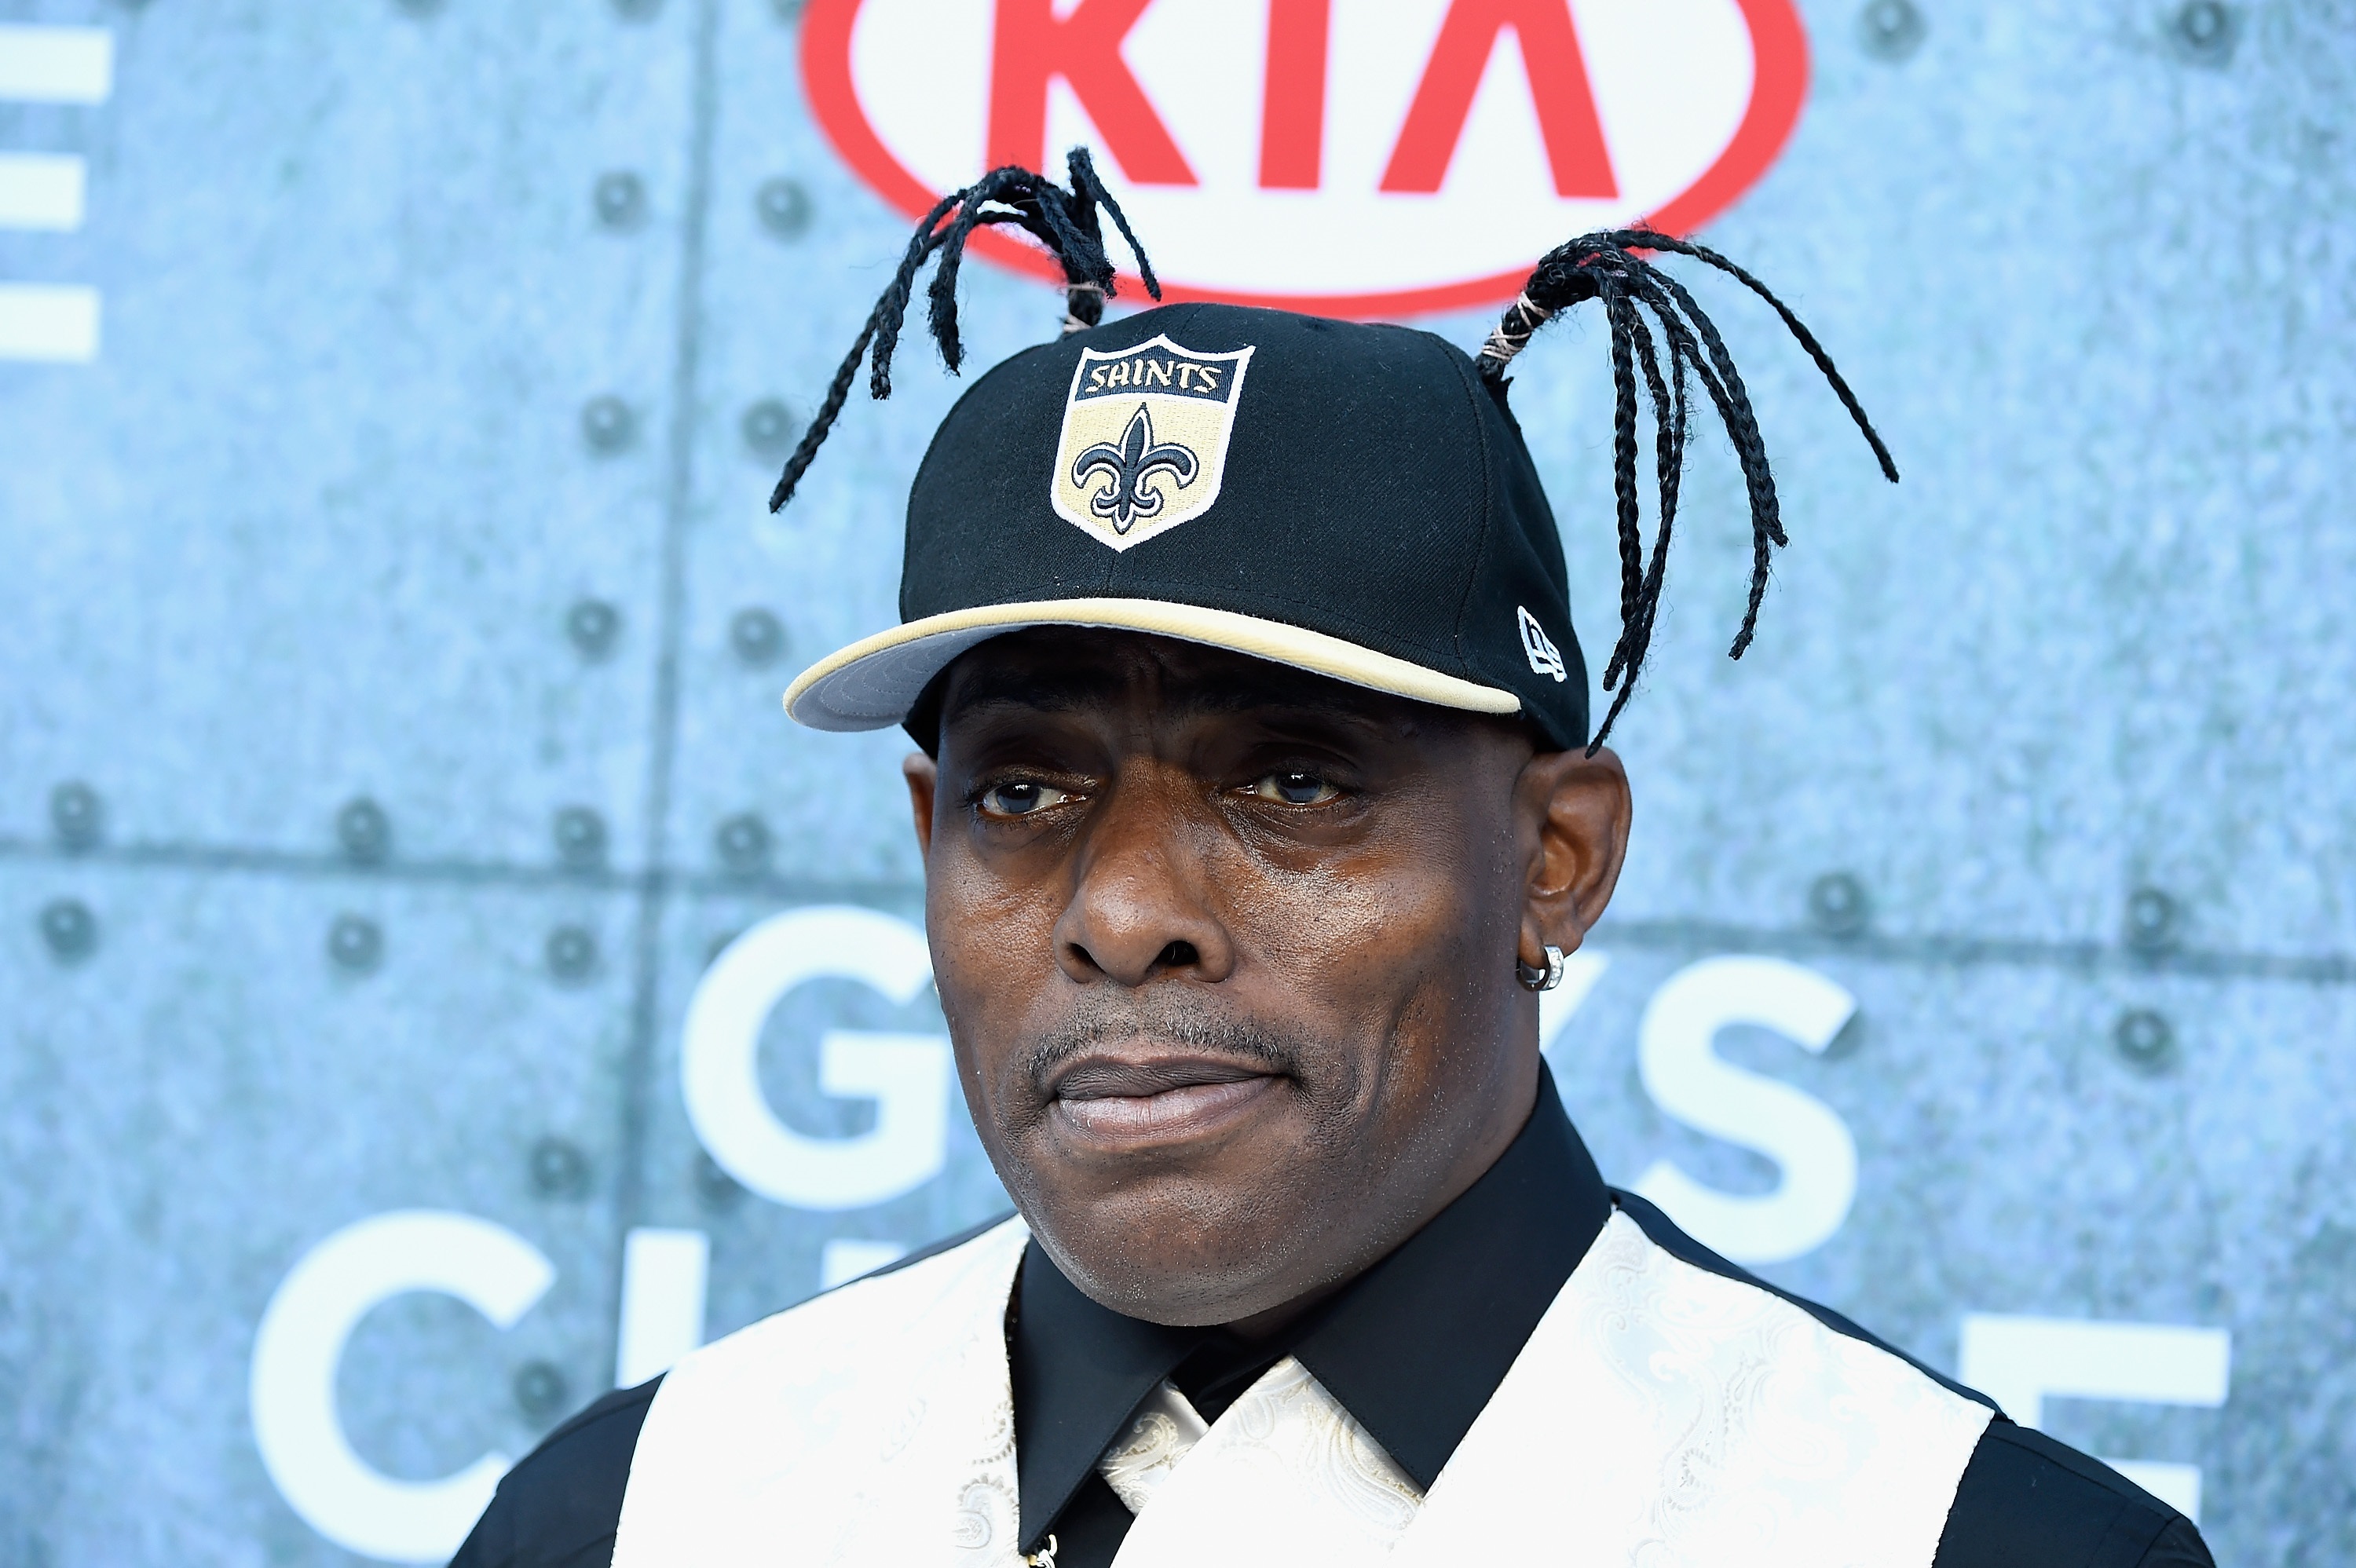 Рапърът Кулио е бил арестуван на летището в Лос Анджелис. Той е най-известен с хита си „Gangsta's Paradise“ от 1995 г.